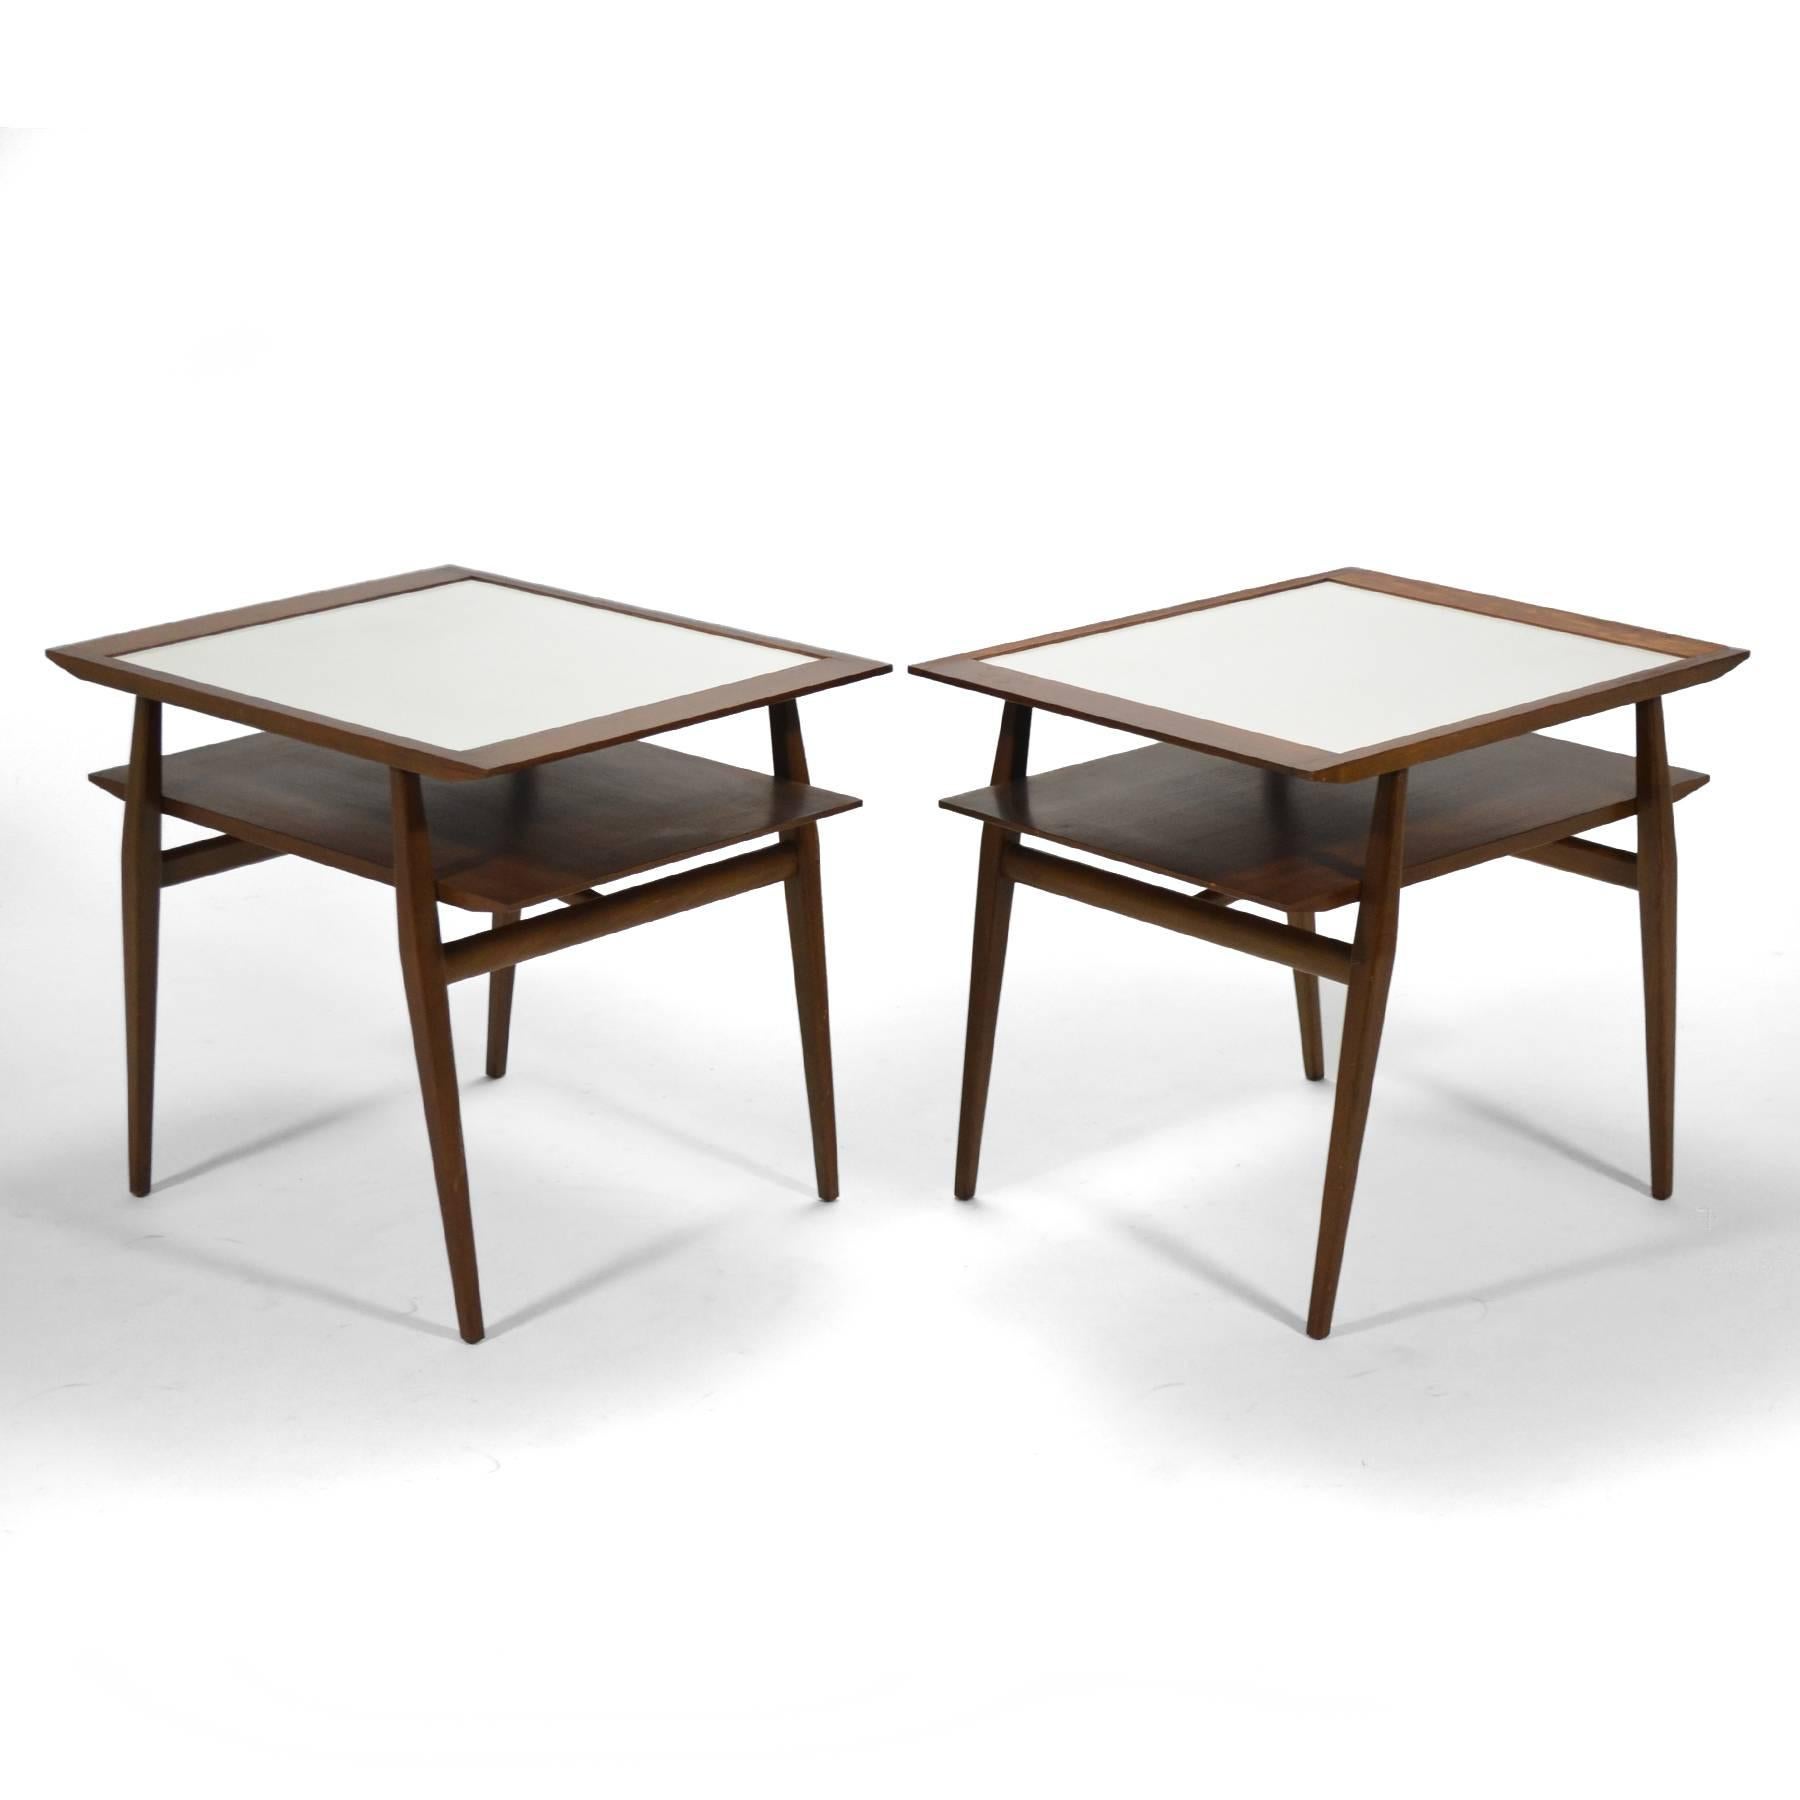 Dieses hübsche, zweistöckige Bertha Schaefer Tischpaar aus Nussbaumholz hat eingelassene Glimmerplatten und dramatische, kantige Linien. Im Katalog von Singer and Sons wurde die Konstruktion als Modell Nr. 2132 bezeichnet.